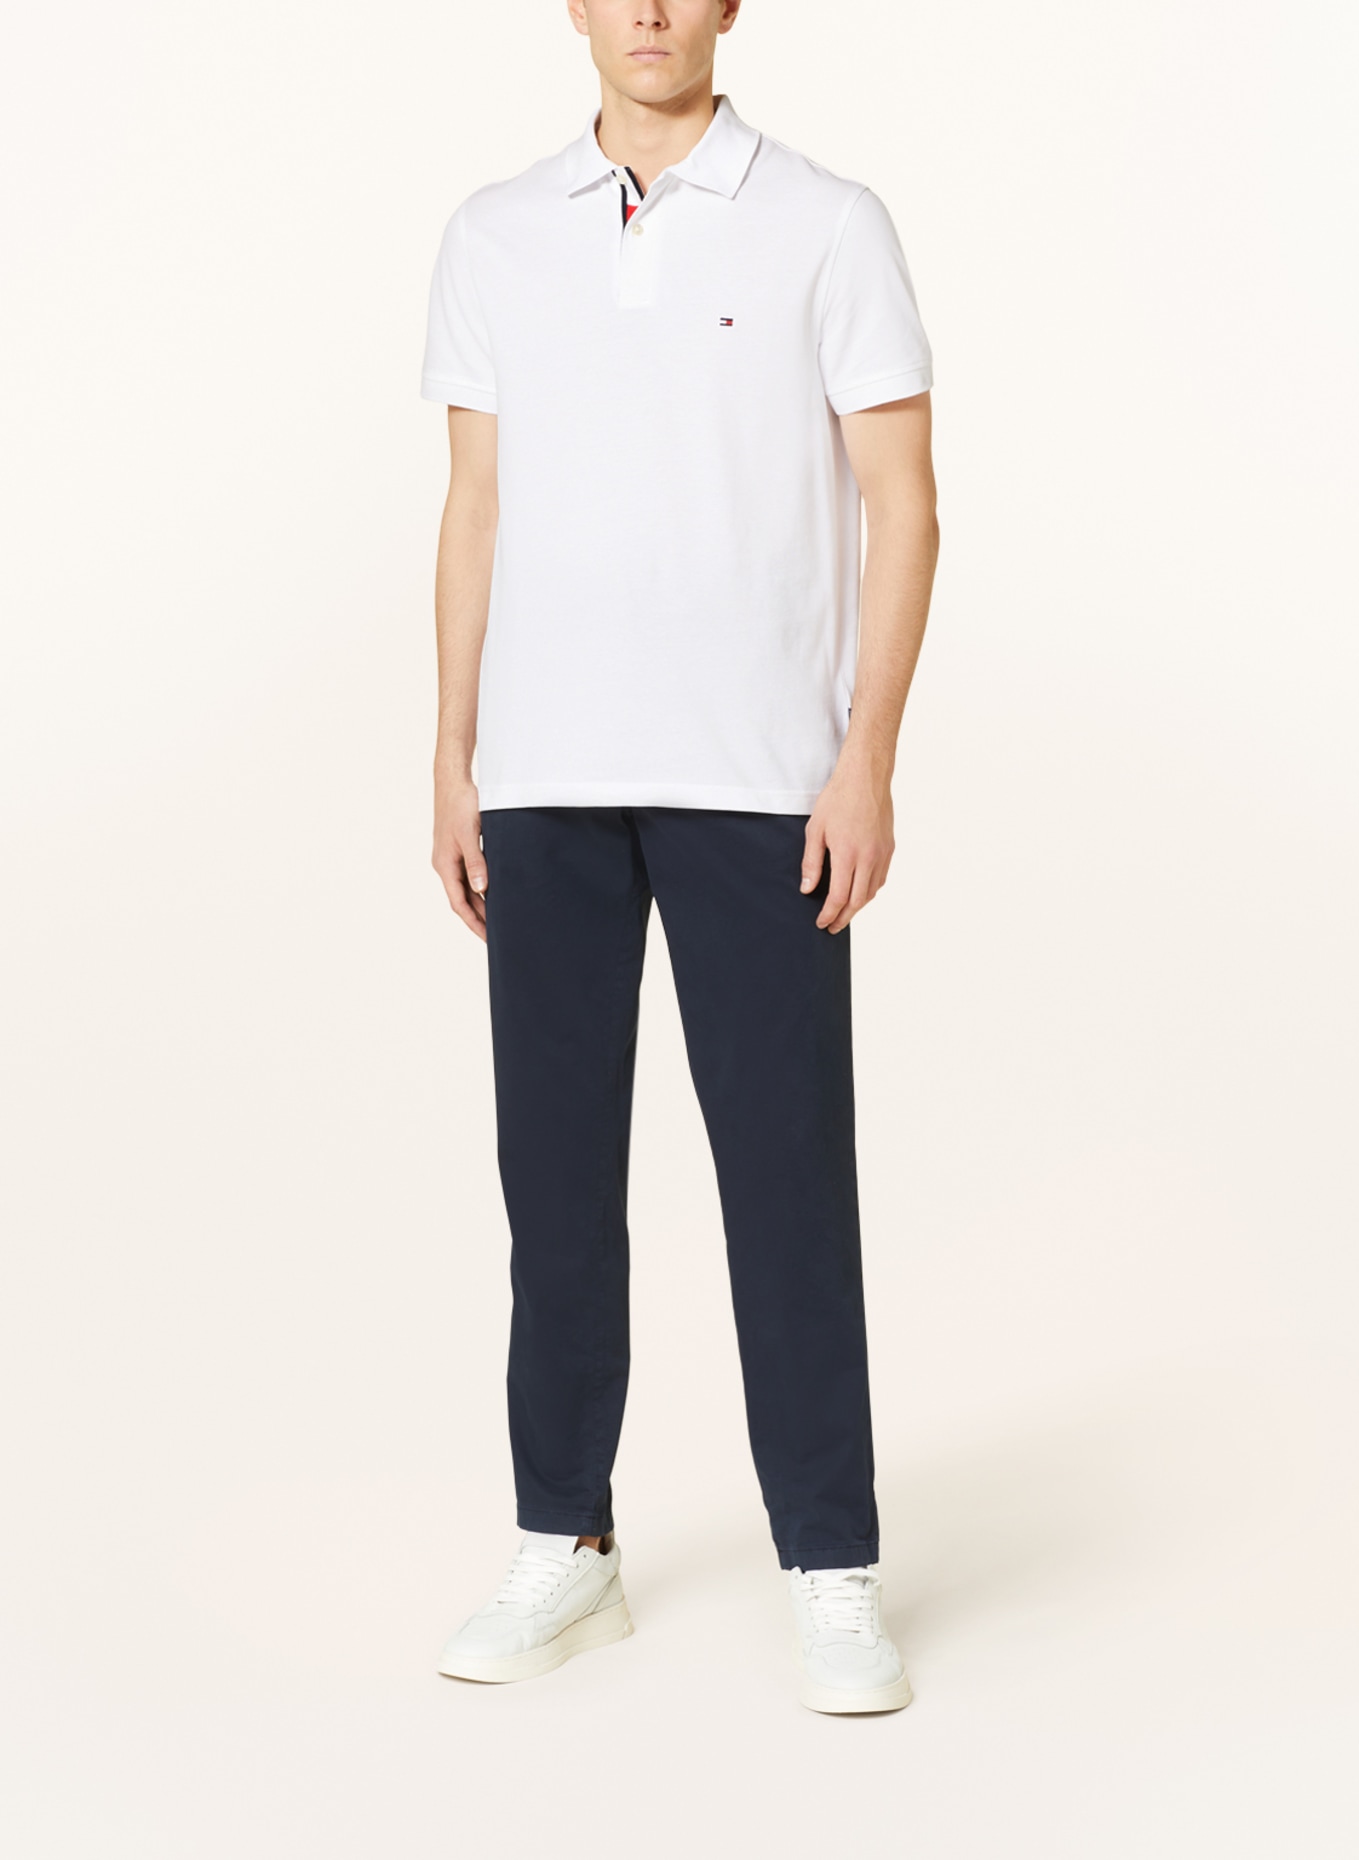 TOMMY HILFIGER Piqué-Poloshirt Regular Fit, Farbe: WEISS (Bild 2)